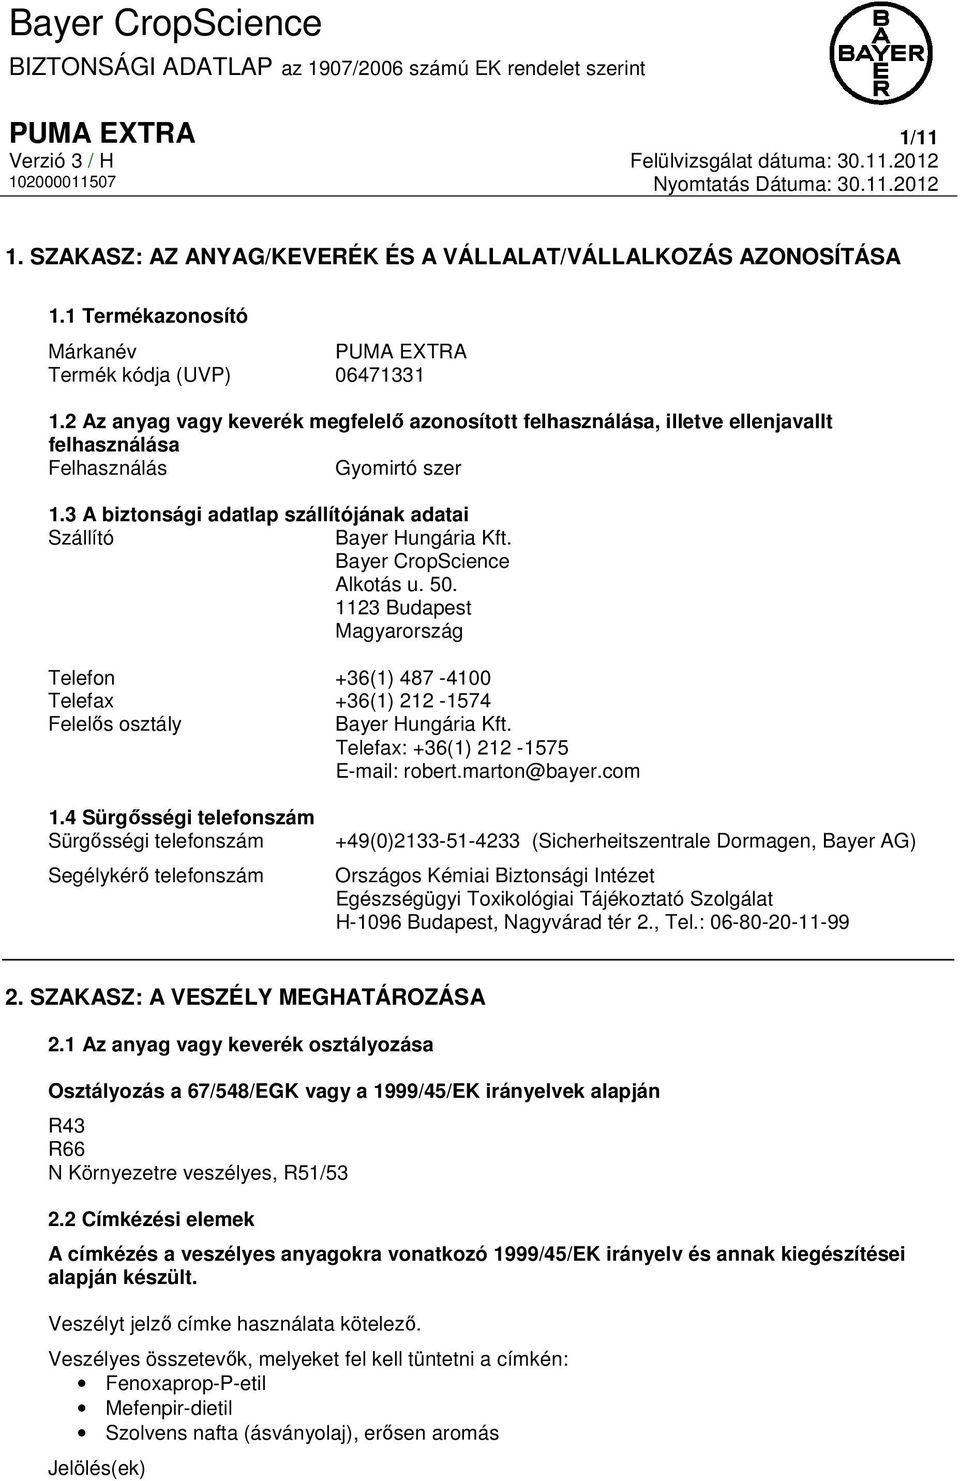 Bayer CropScience Alkotás u. 50. 1123 Budapest Magyarország Telefon +36(1) 487-4100 Telefax +36(1) 212-1574 Felelős osztály Bayer Hungária Kft. Telefax: +36(1) 212-1575 E-mail: robert.marton@bayer.